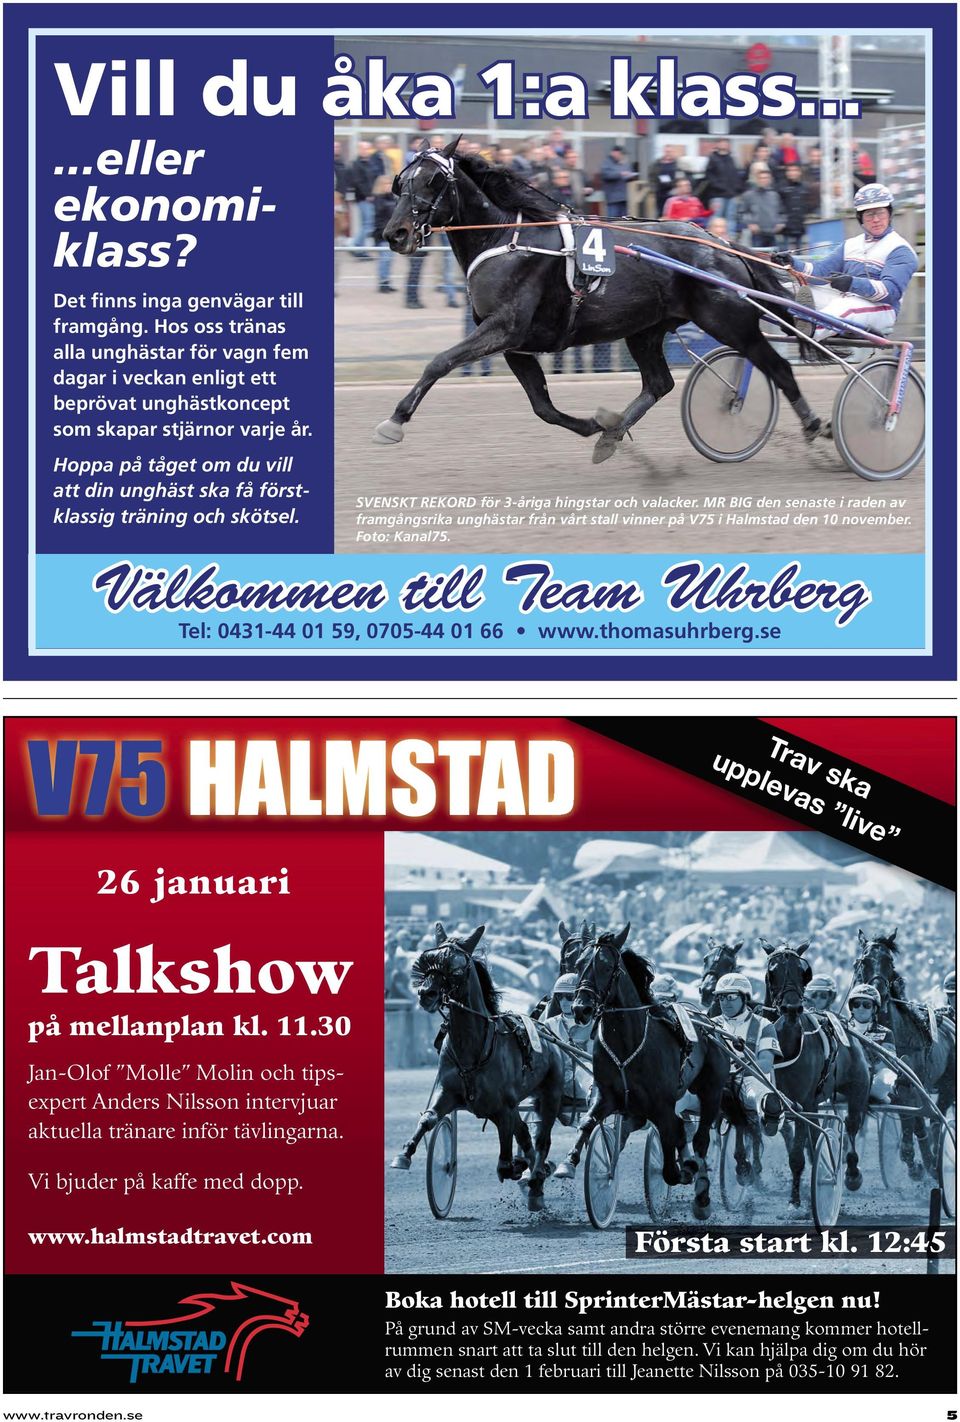 Välkommen till Team Uhrberg V75 HALMSTAD Trav ska upplevas live 26 januari Talkshow på mellanplan kl. 11.